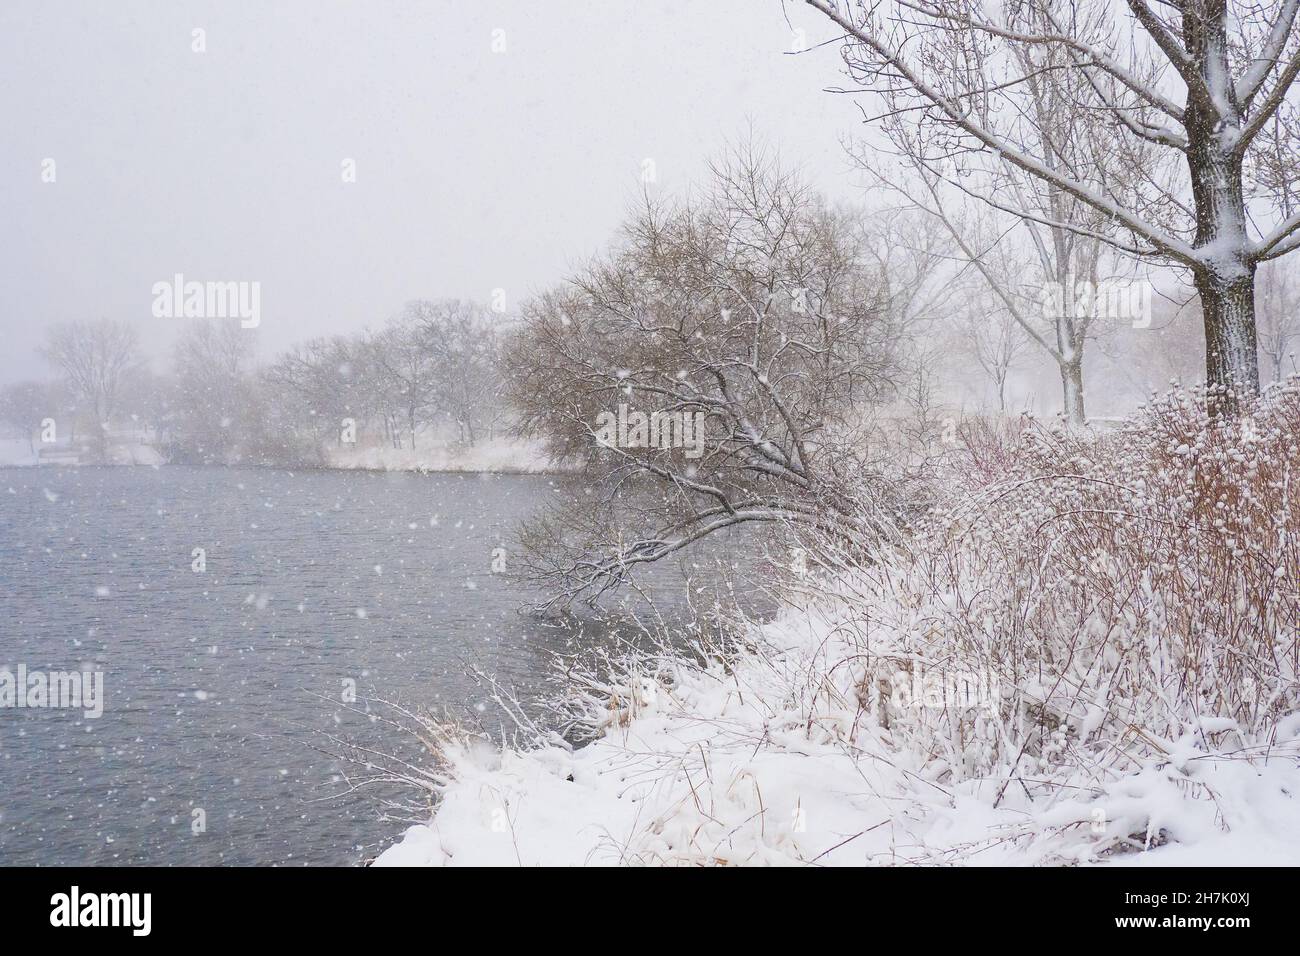 Lago invernale con piante innevate e alberi e fiocchi di neve in caduta Foto Stock